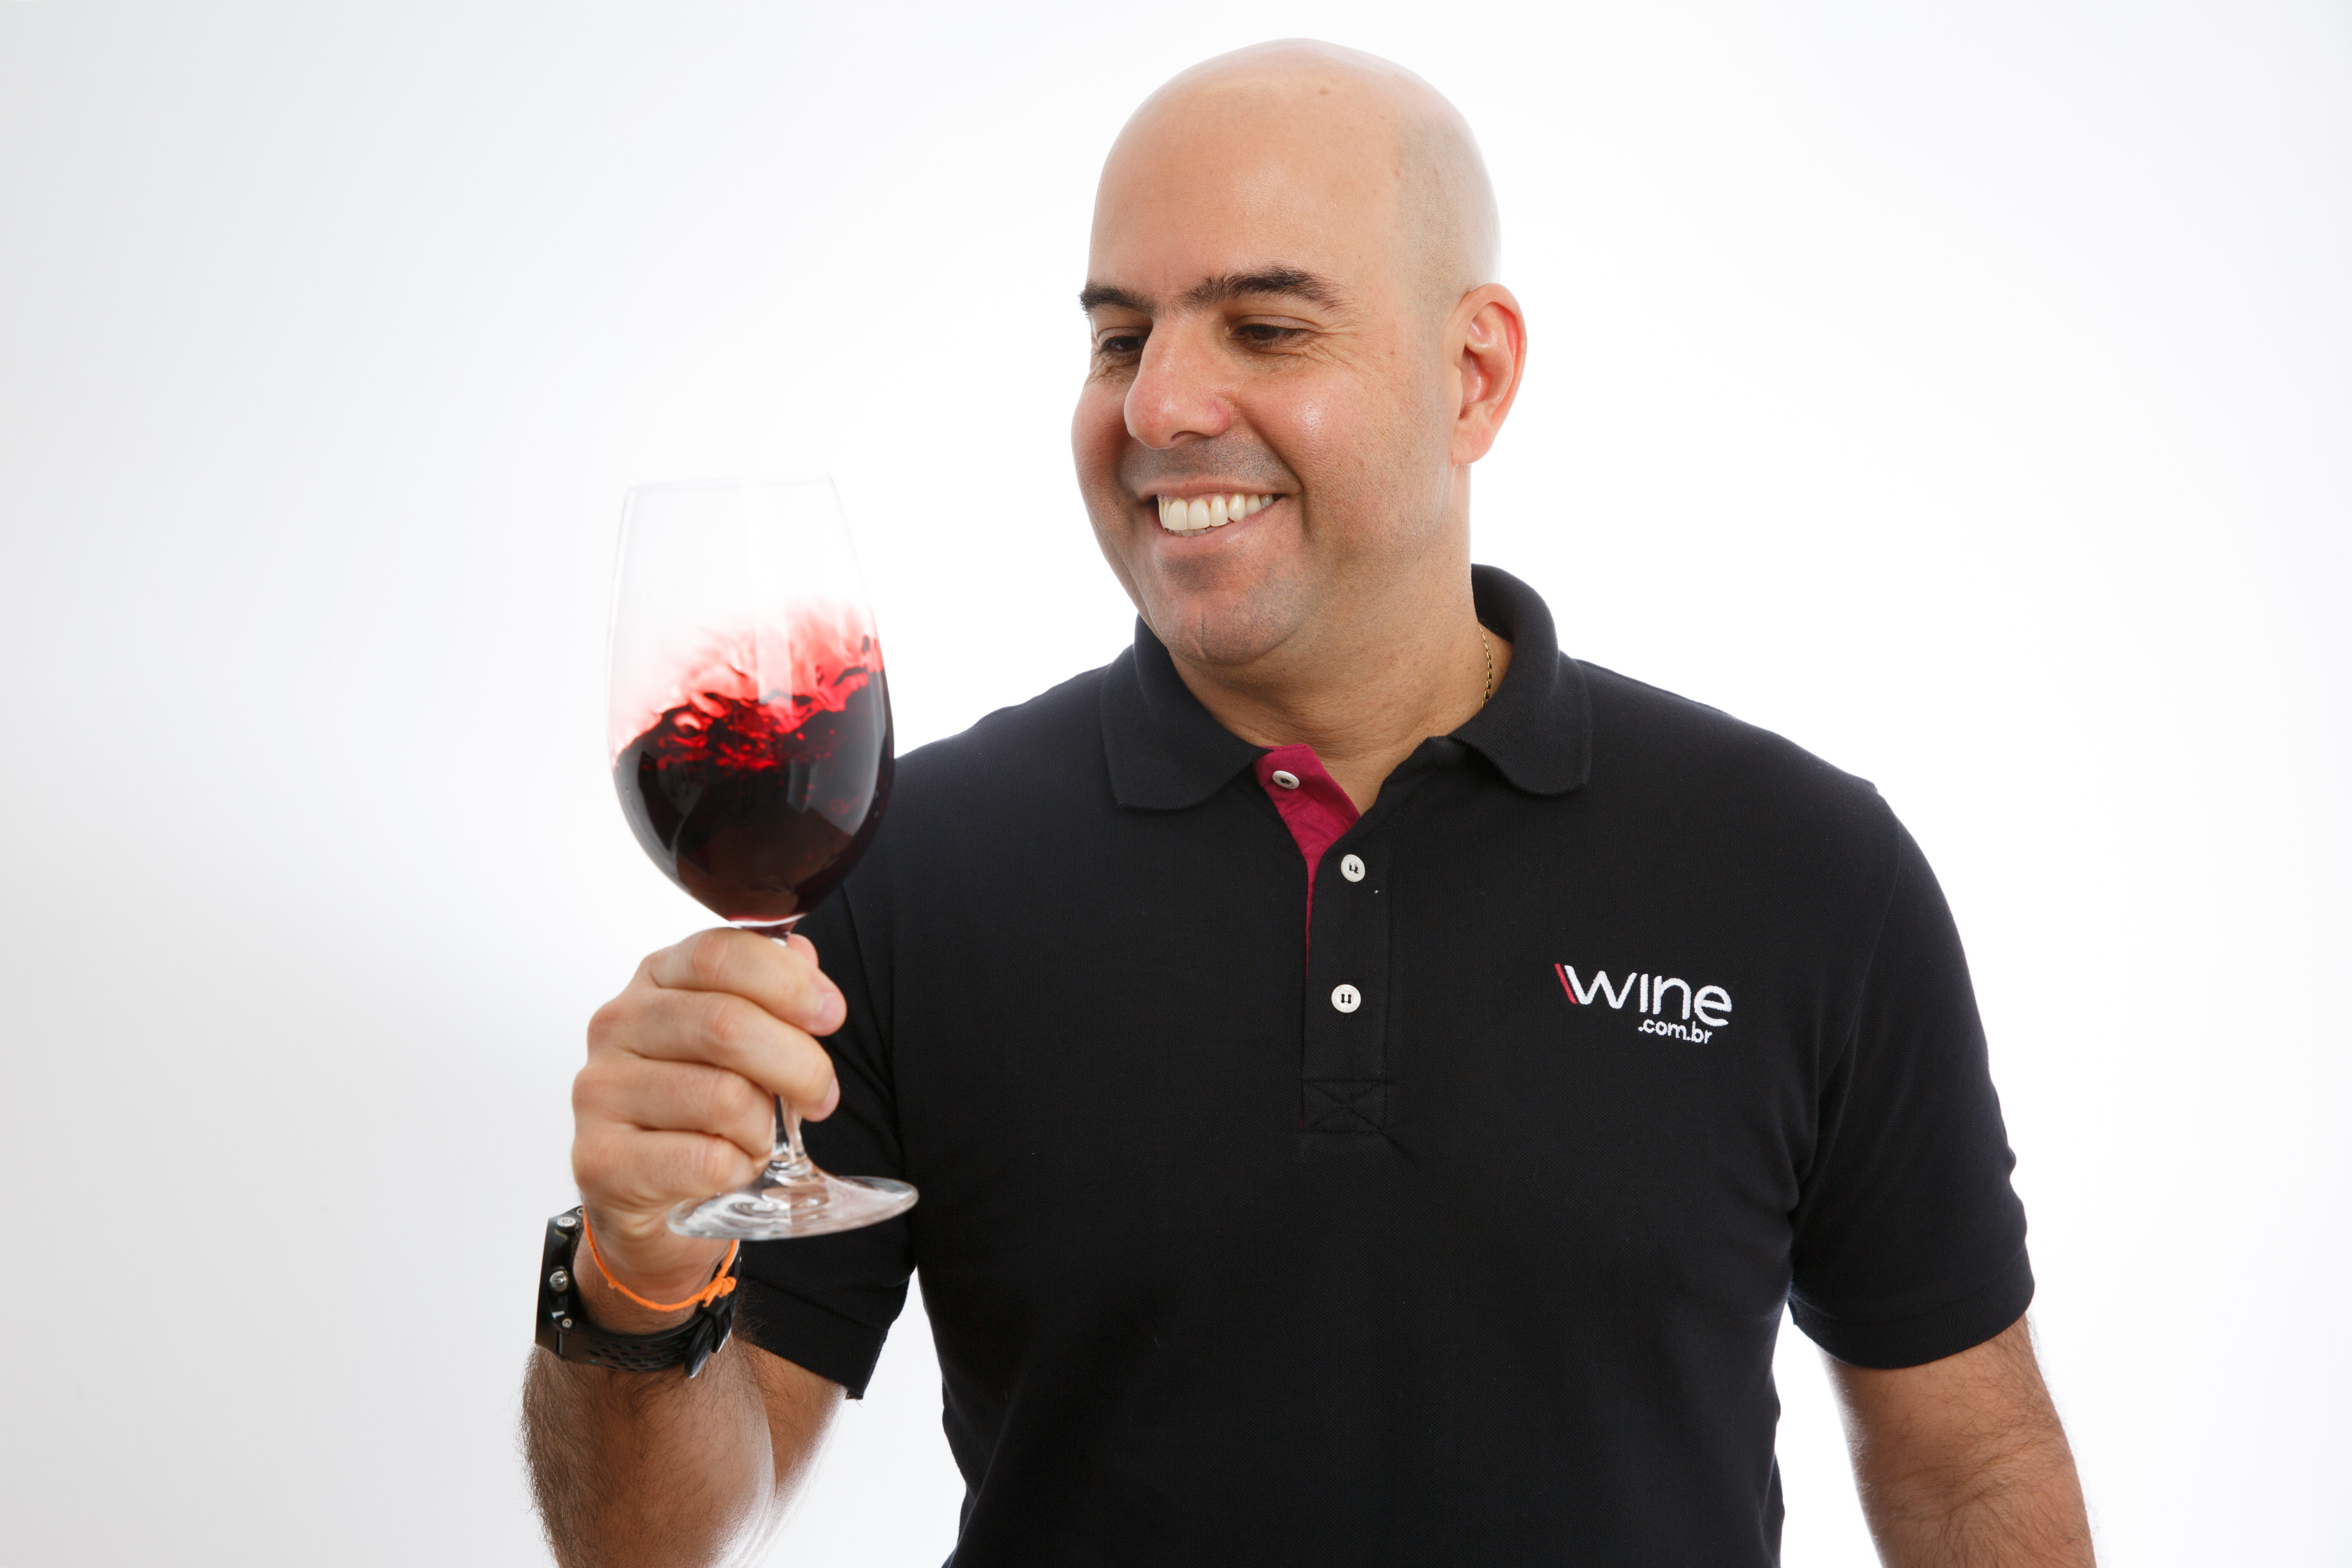 Fundador da Wine, e-commerce de vinhos, revela como lidou com a saída do sócio